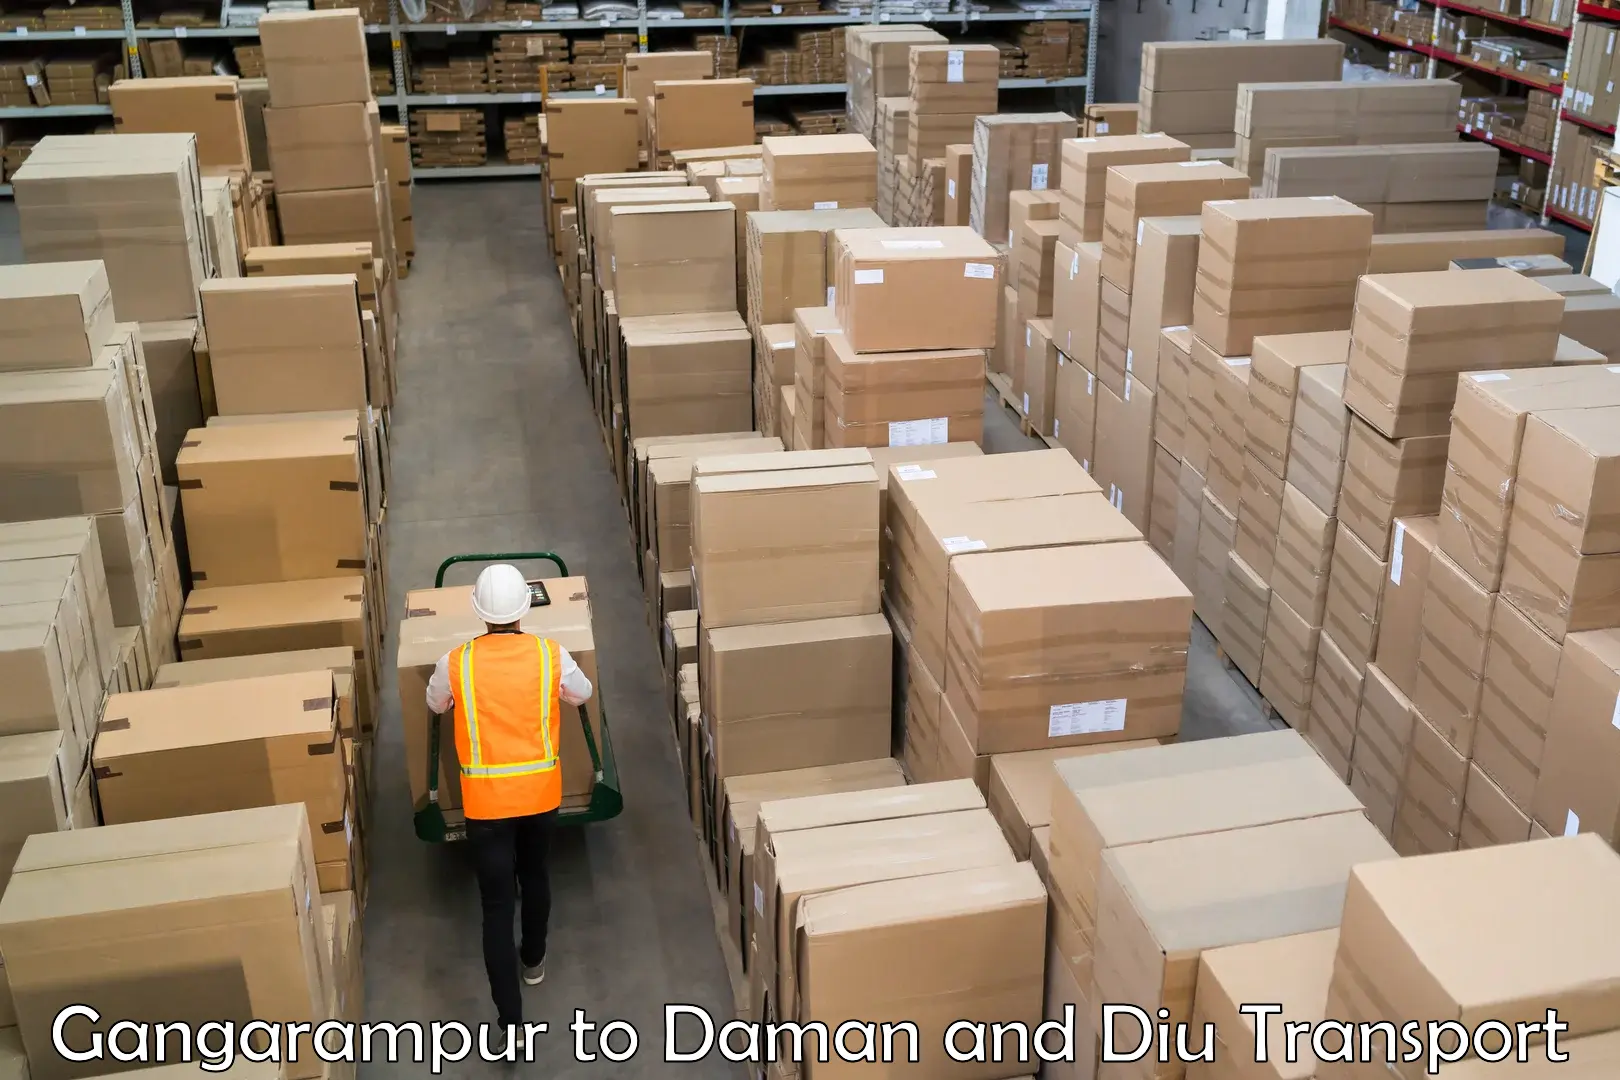 Shipping partner Gangarampur to Daman